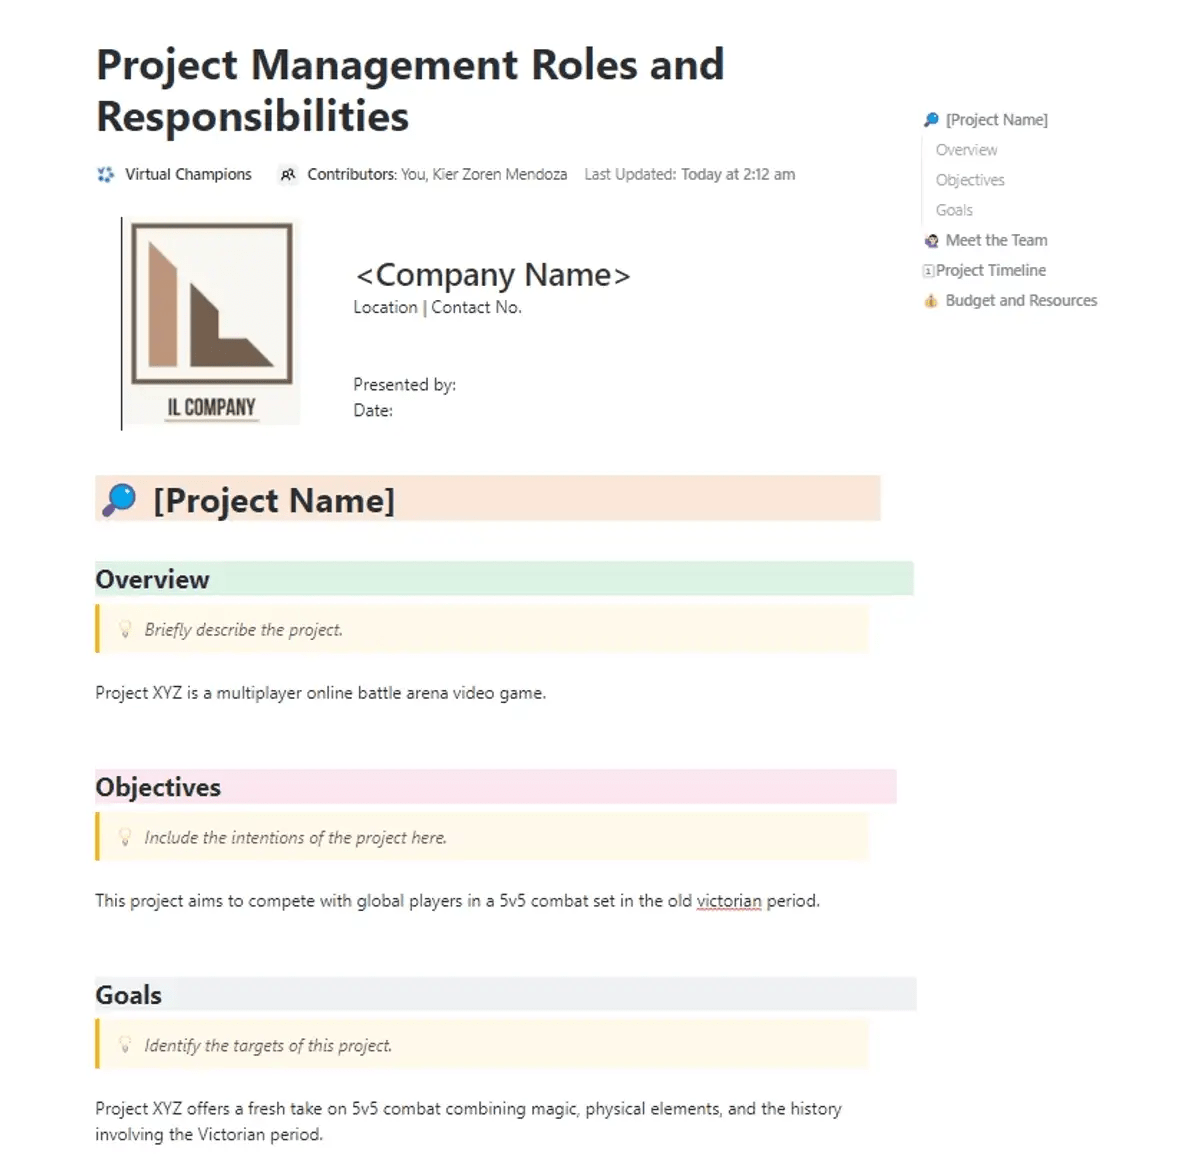 Definieren und verwalten Sie Verantwortlichkeiten und Aufgaben mit dem Project Management Roles and Responsibilities Template auf ClickUp